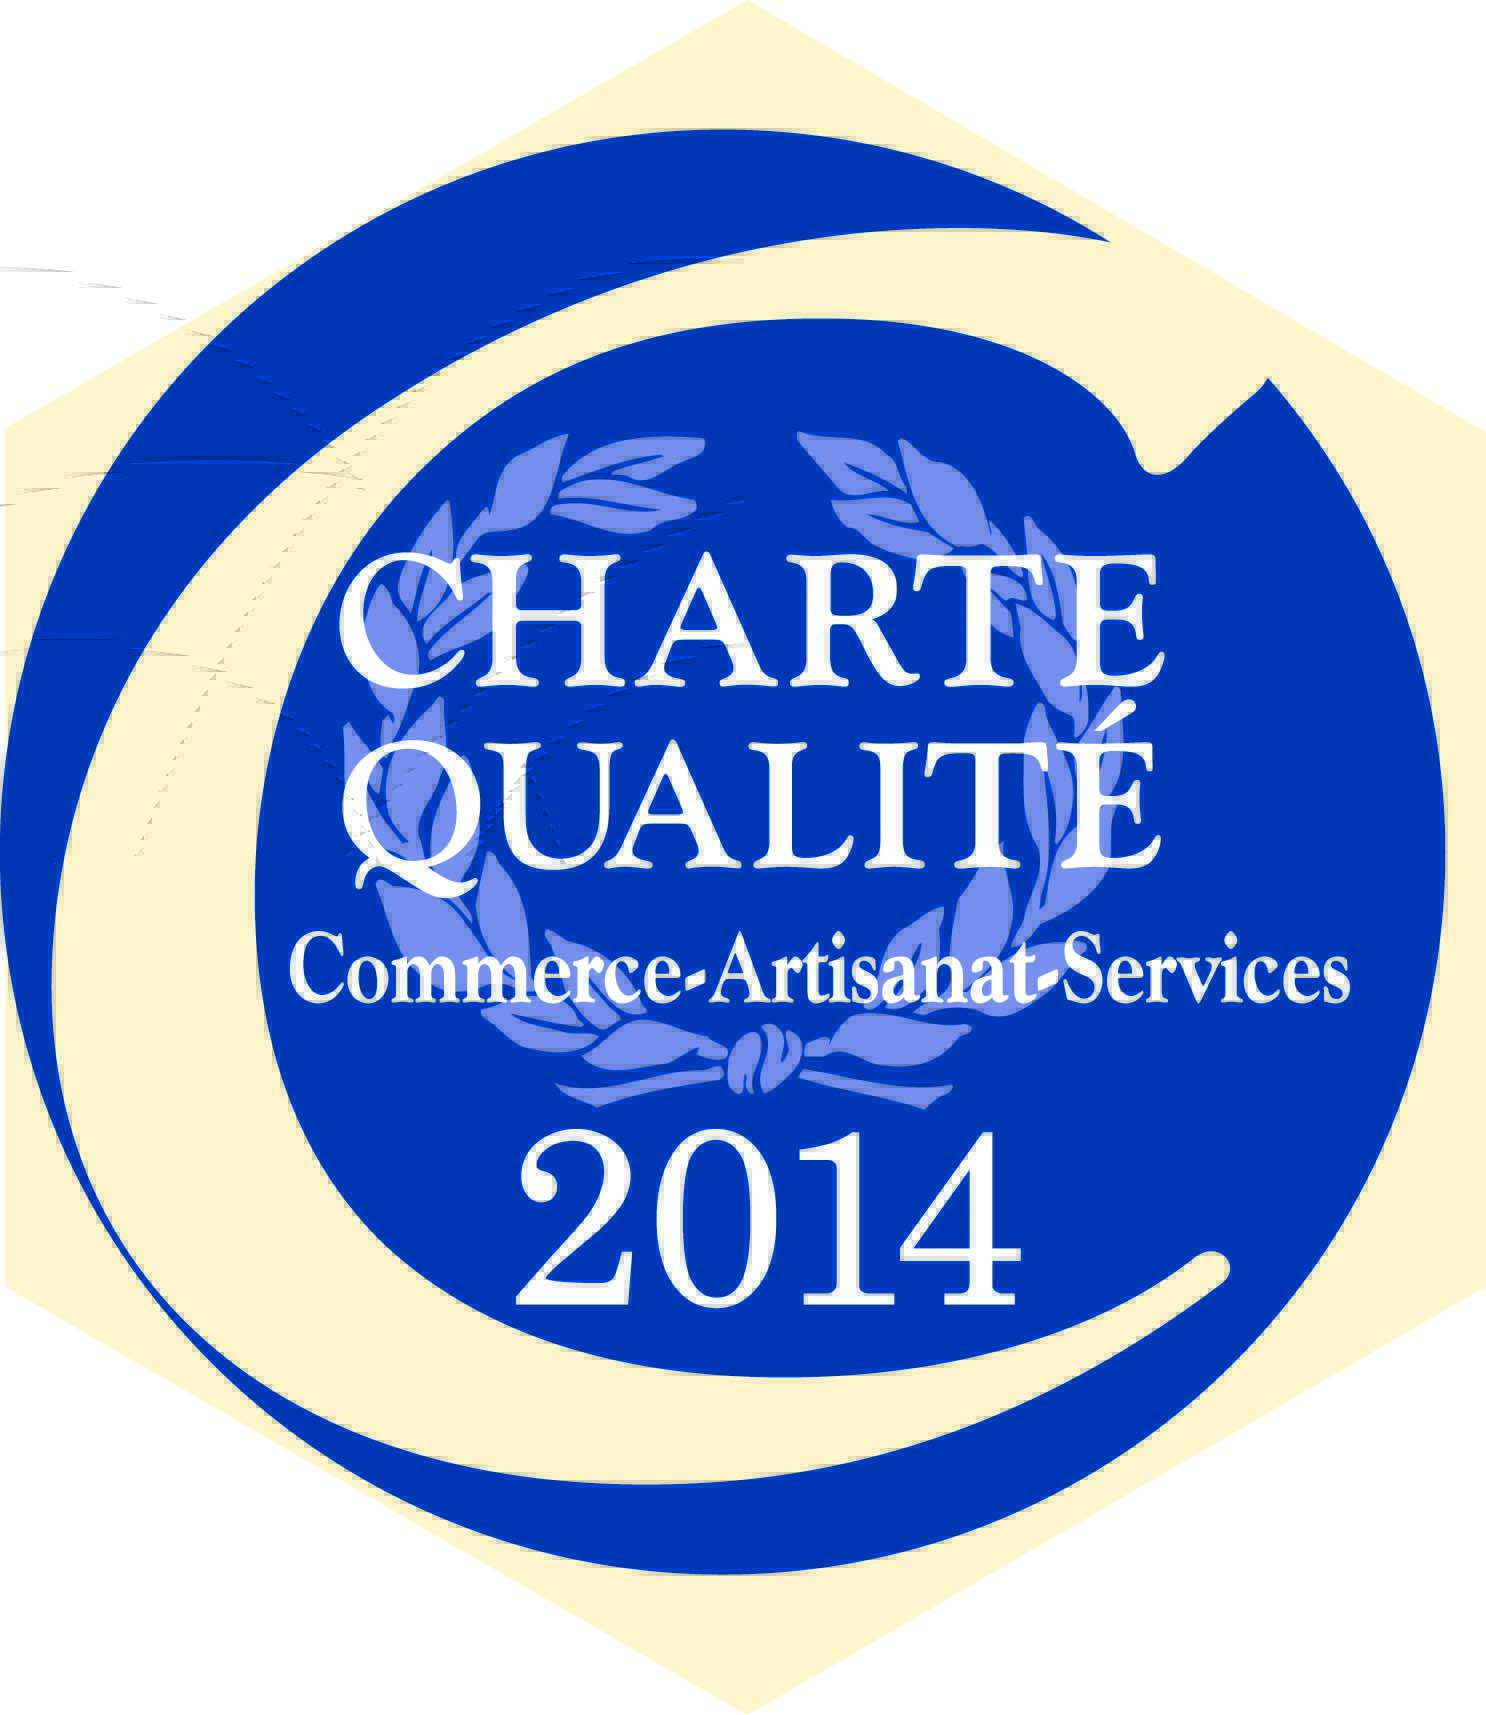 Charte Qualité Accueil Ecoute Conseil 2014 2015